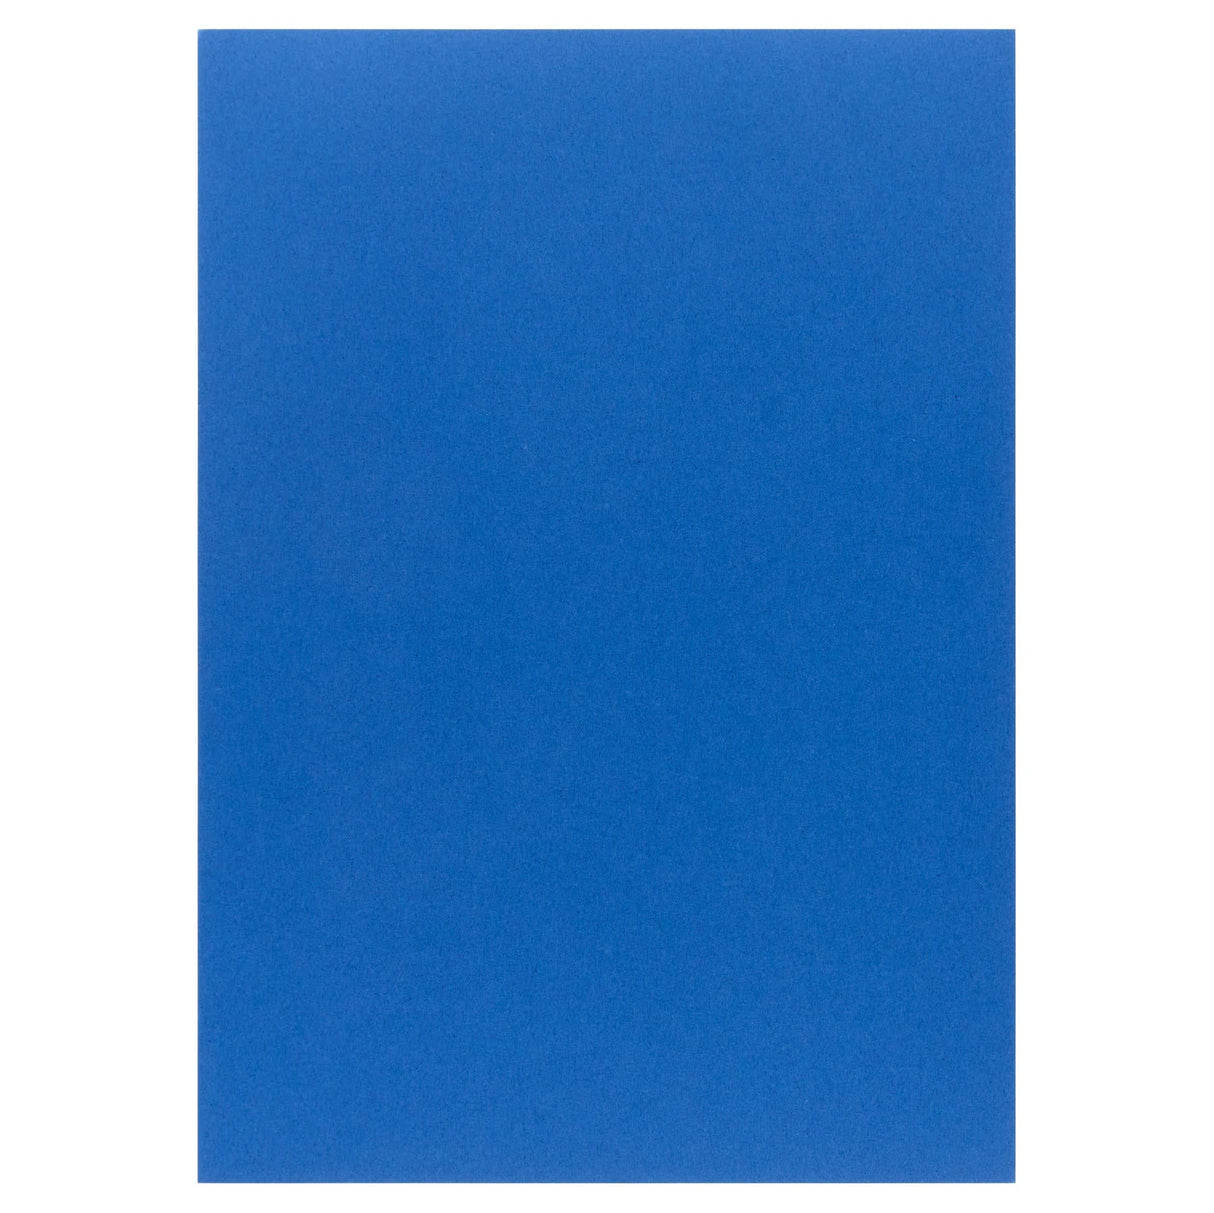 Premier Activity A4 Card - 160 gsm - Cobalt Blue - 50 Sheets-Craft Paper & Card-Premier|StationeryShop.co.uk